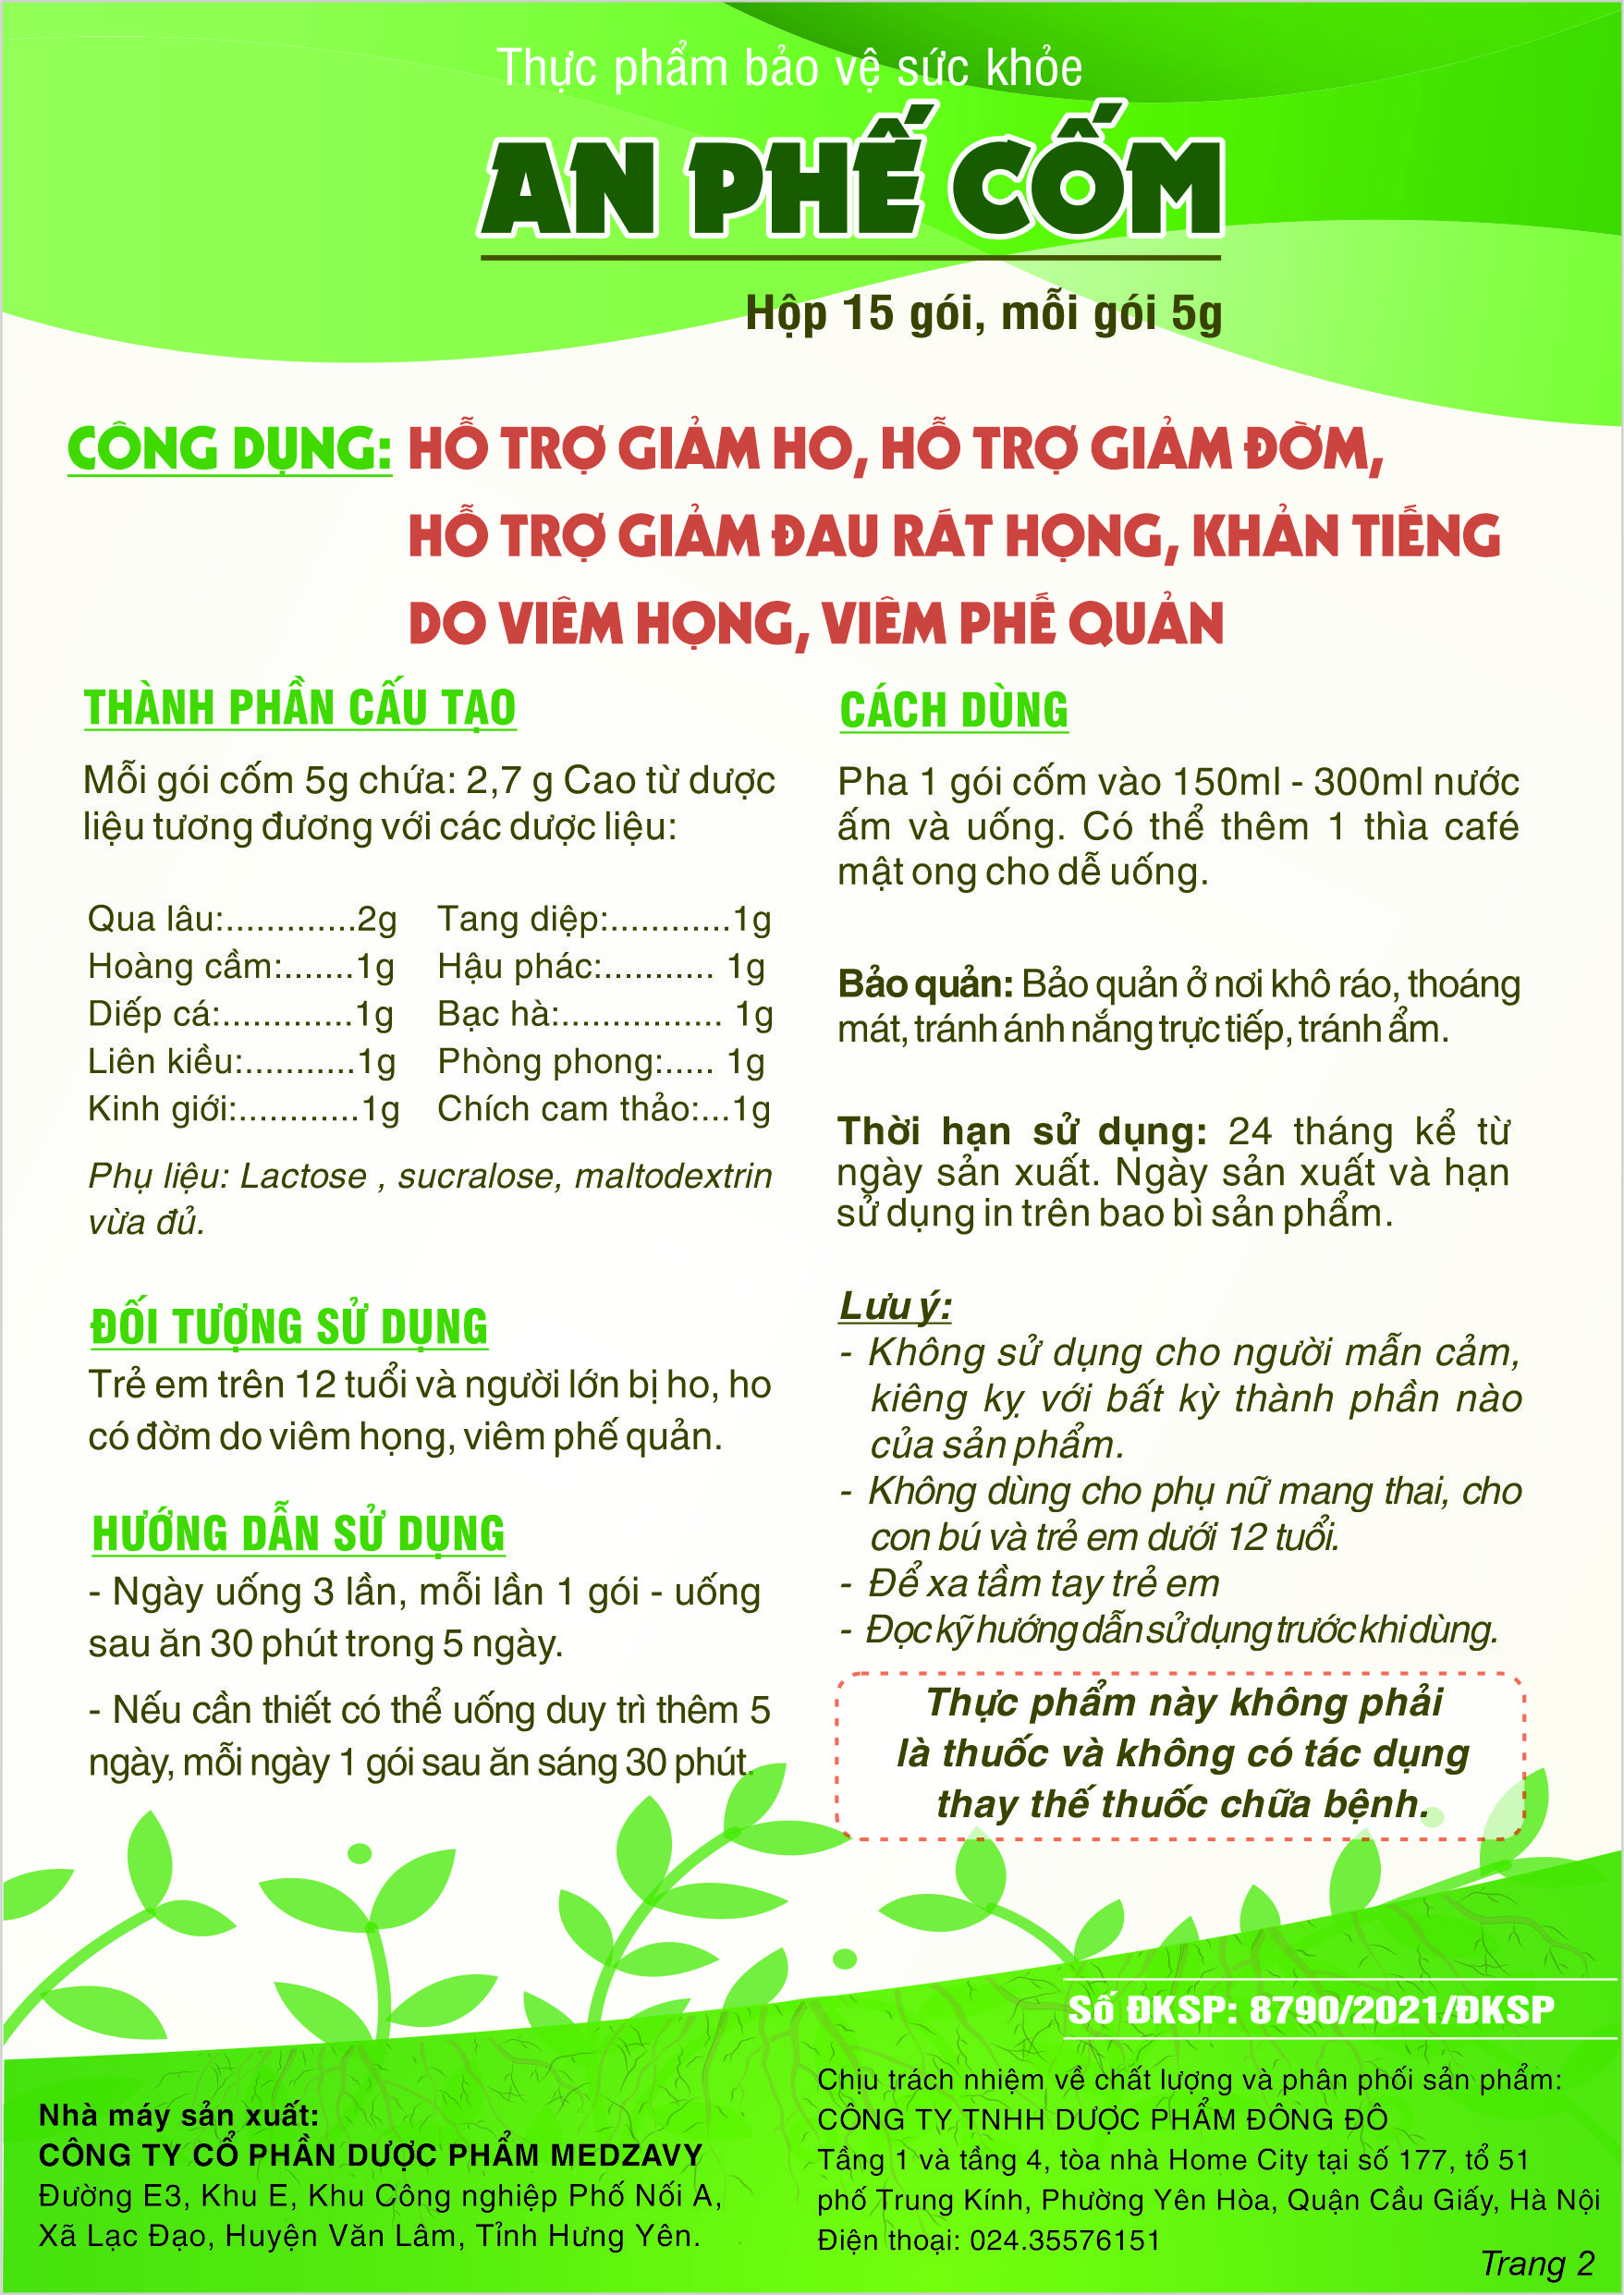 Quang cao An phe com 2